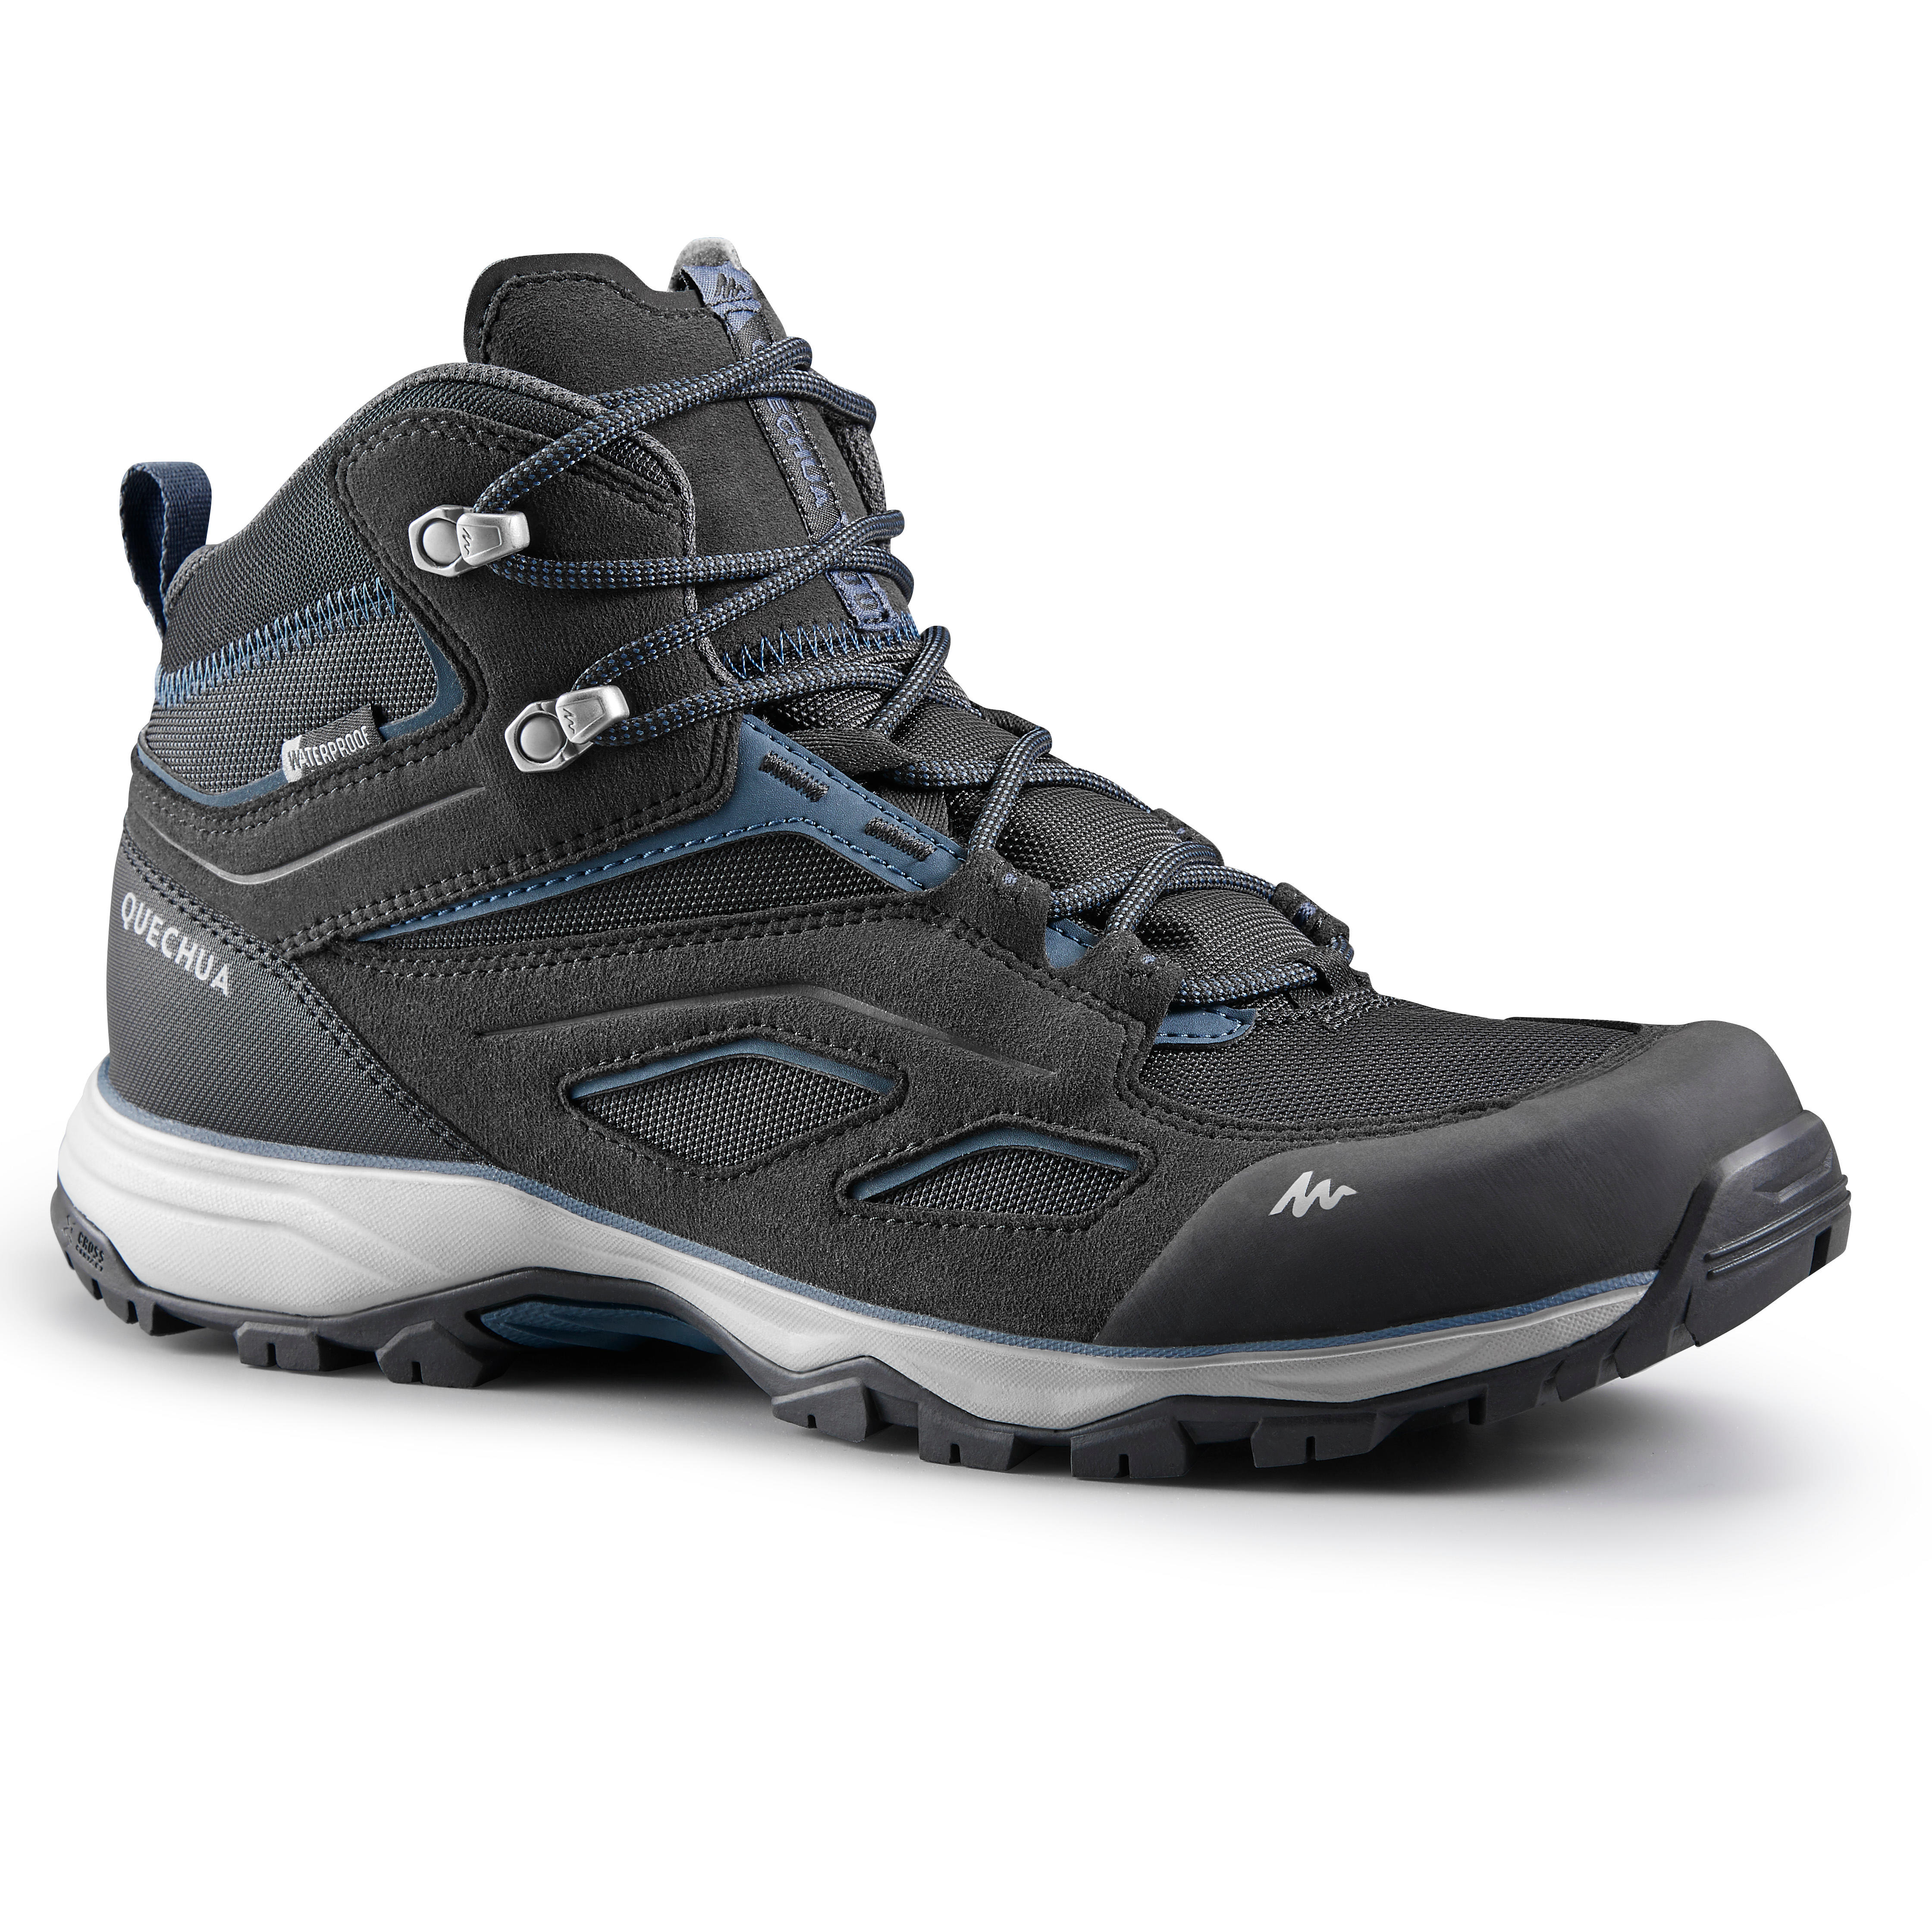 QUECHUA Chaussures imperméables de randonnée montagne - MH100 Mid Noir - Homme - QUECHUA - 40